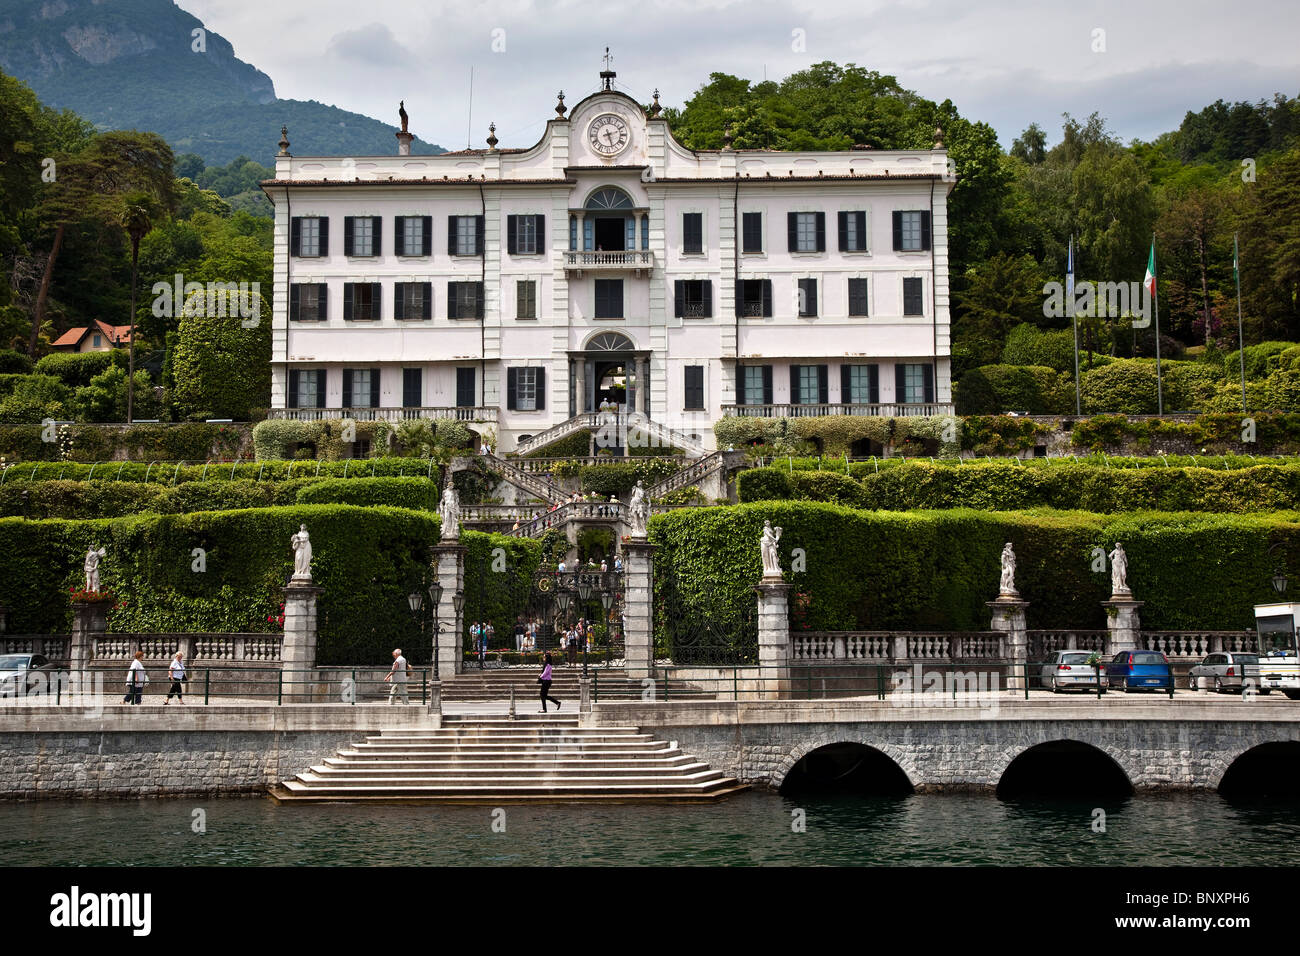 Villa Carlotta from the Lake, Tremezzo, Lake Como, Lombardy, Italy Stock Photo